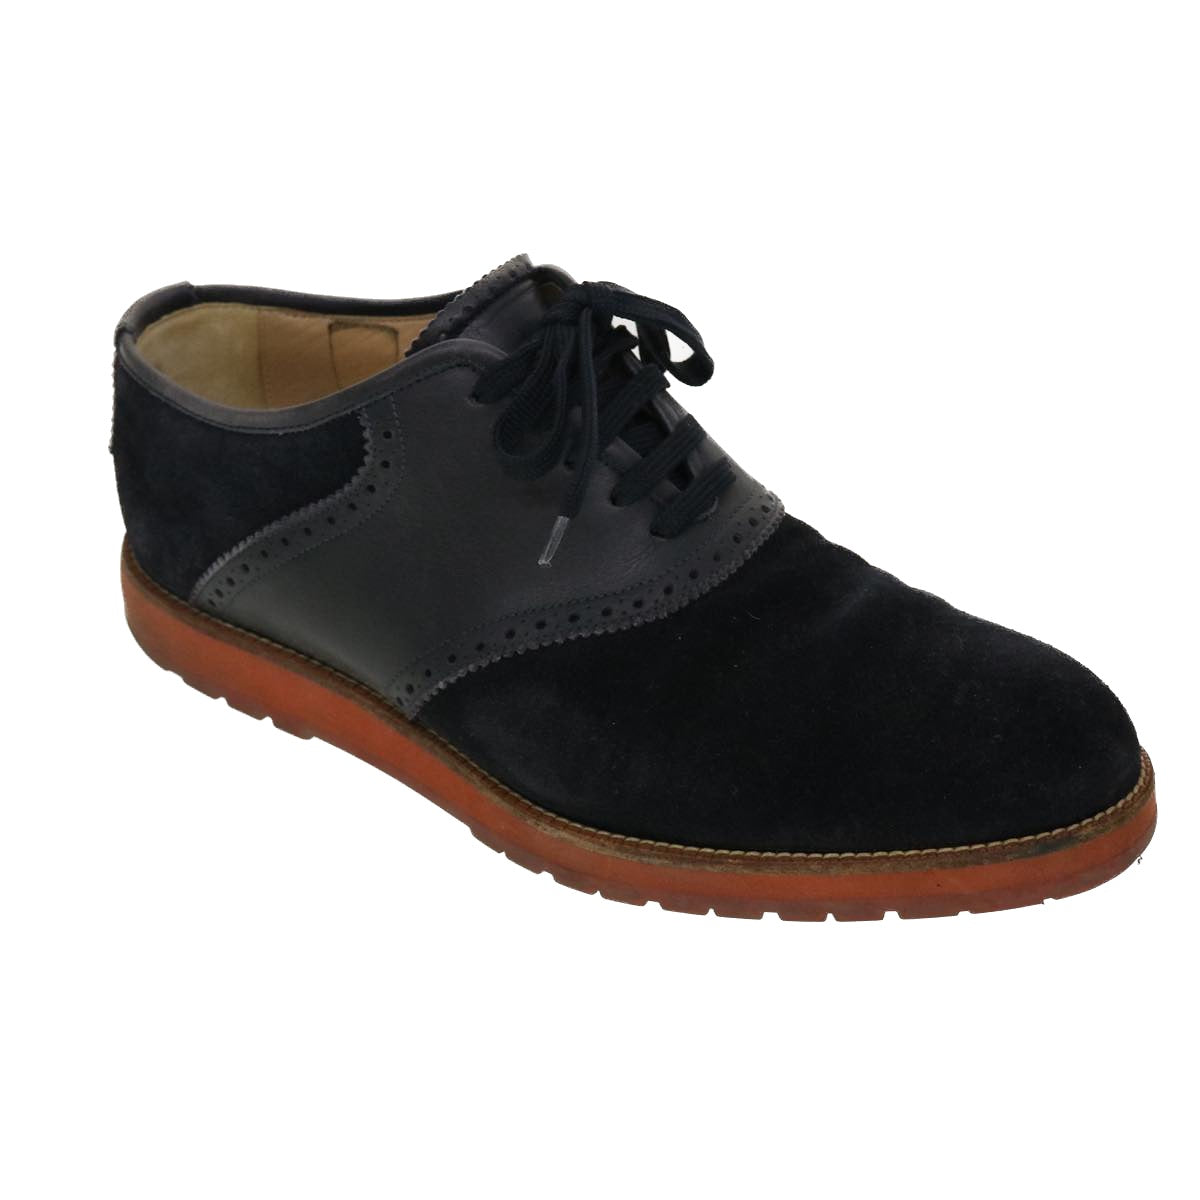 LOUIS VUITTON Shoes Suede Leather 6M Black LV Auth 39347